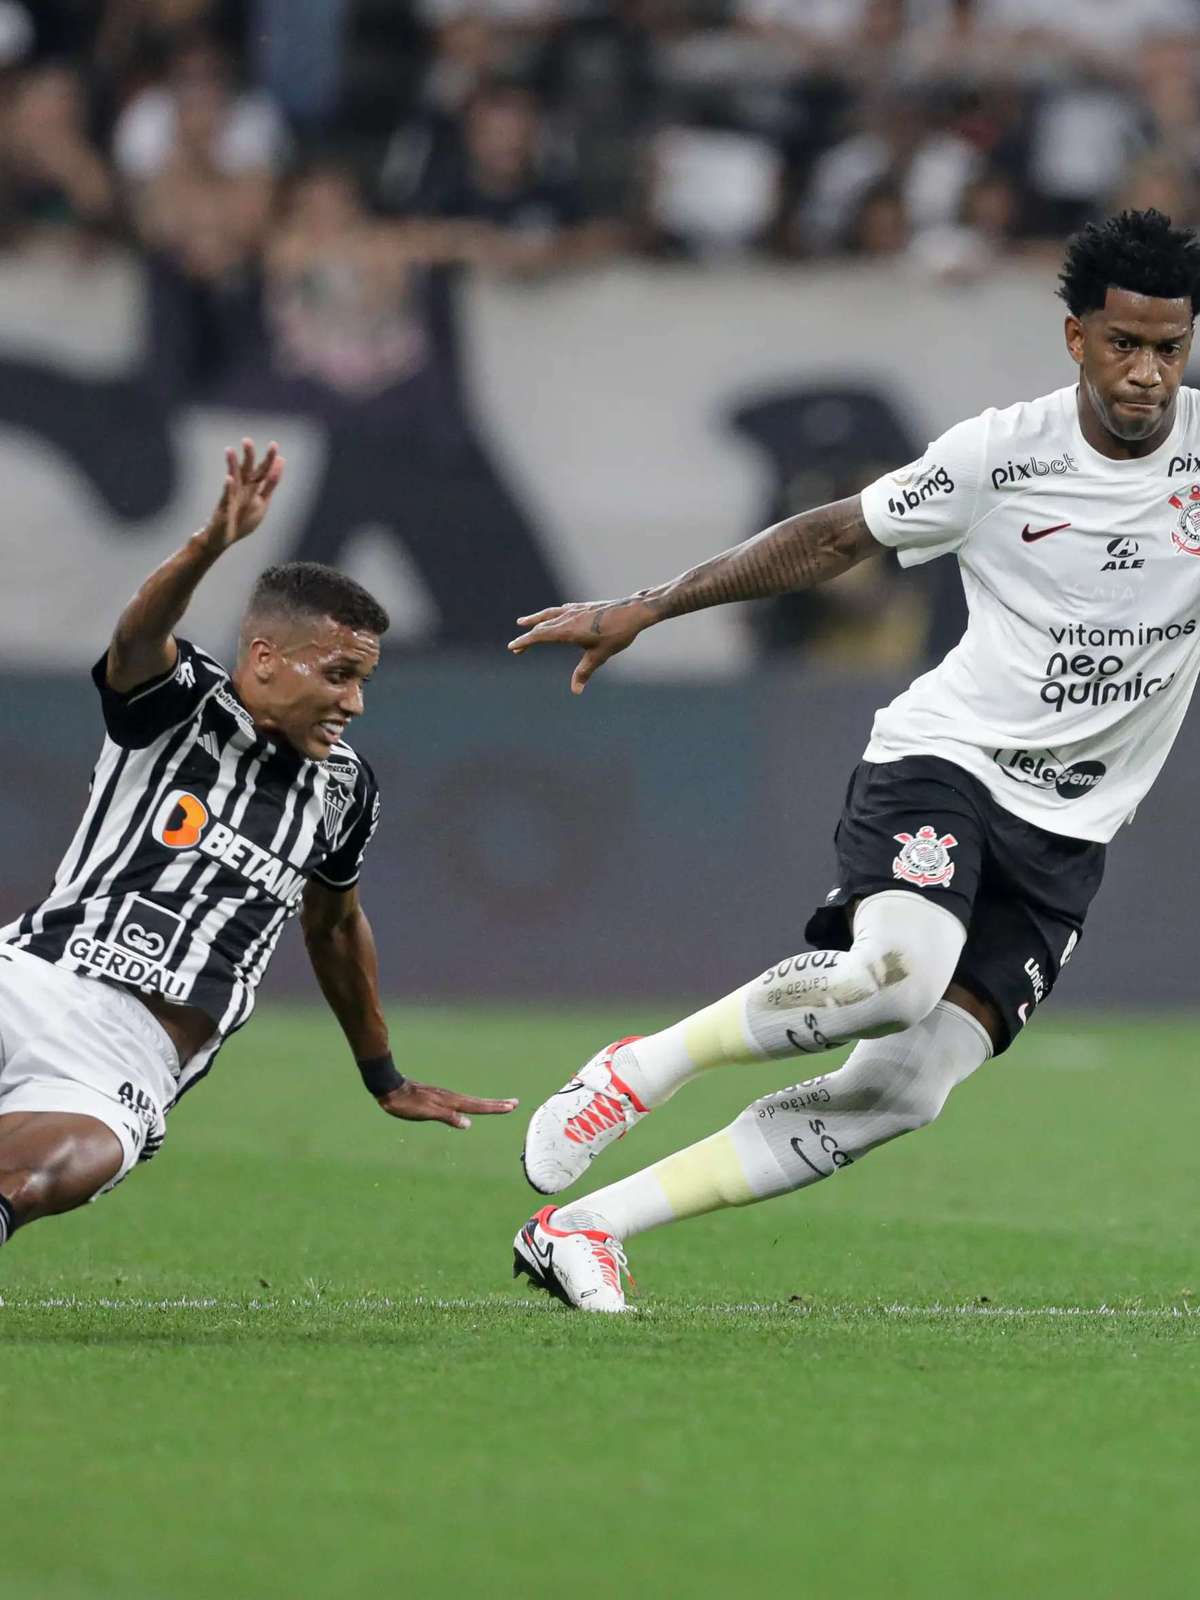 Veja todos os jogos do Corinthians no Campeonato Brasileiro de 2020 -  Gazeta Esportiva